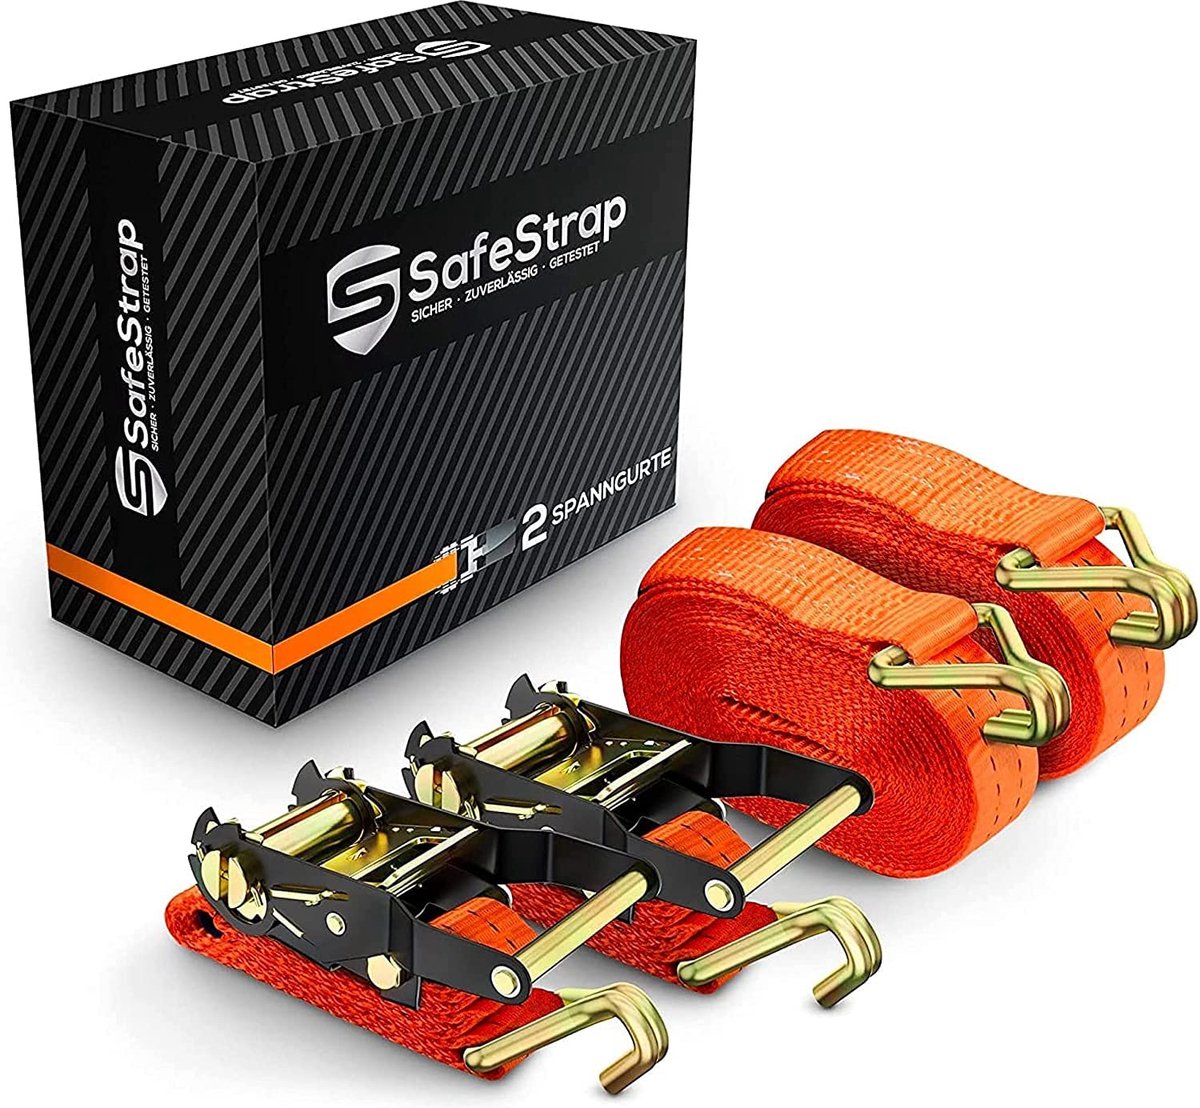 SafeStrap® Spanbanden met haken / Riemen voor fietsdrager - Set van 2 - EN 12195-2 Gecertificeerd - 6m lange ratelbanden met 2000kg capaciteit